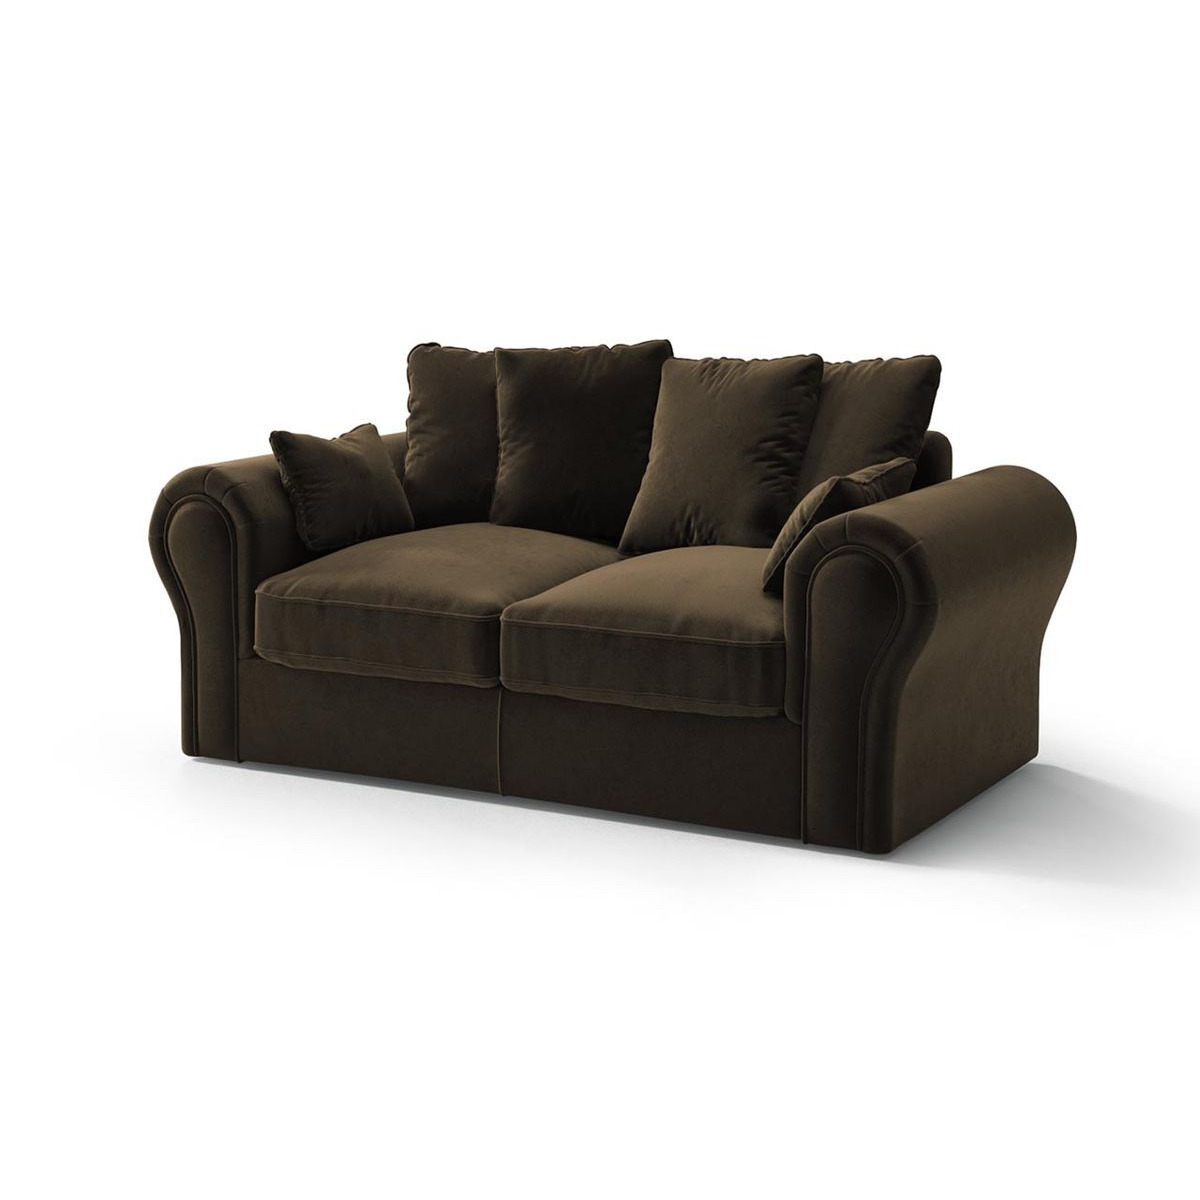 Baron 2 Seater Sofa, brown - image 1